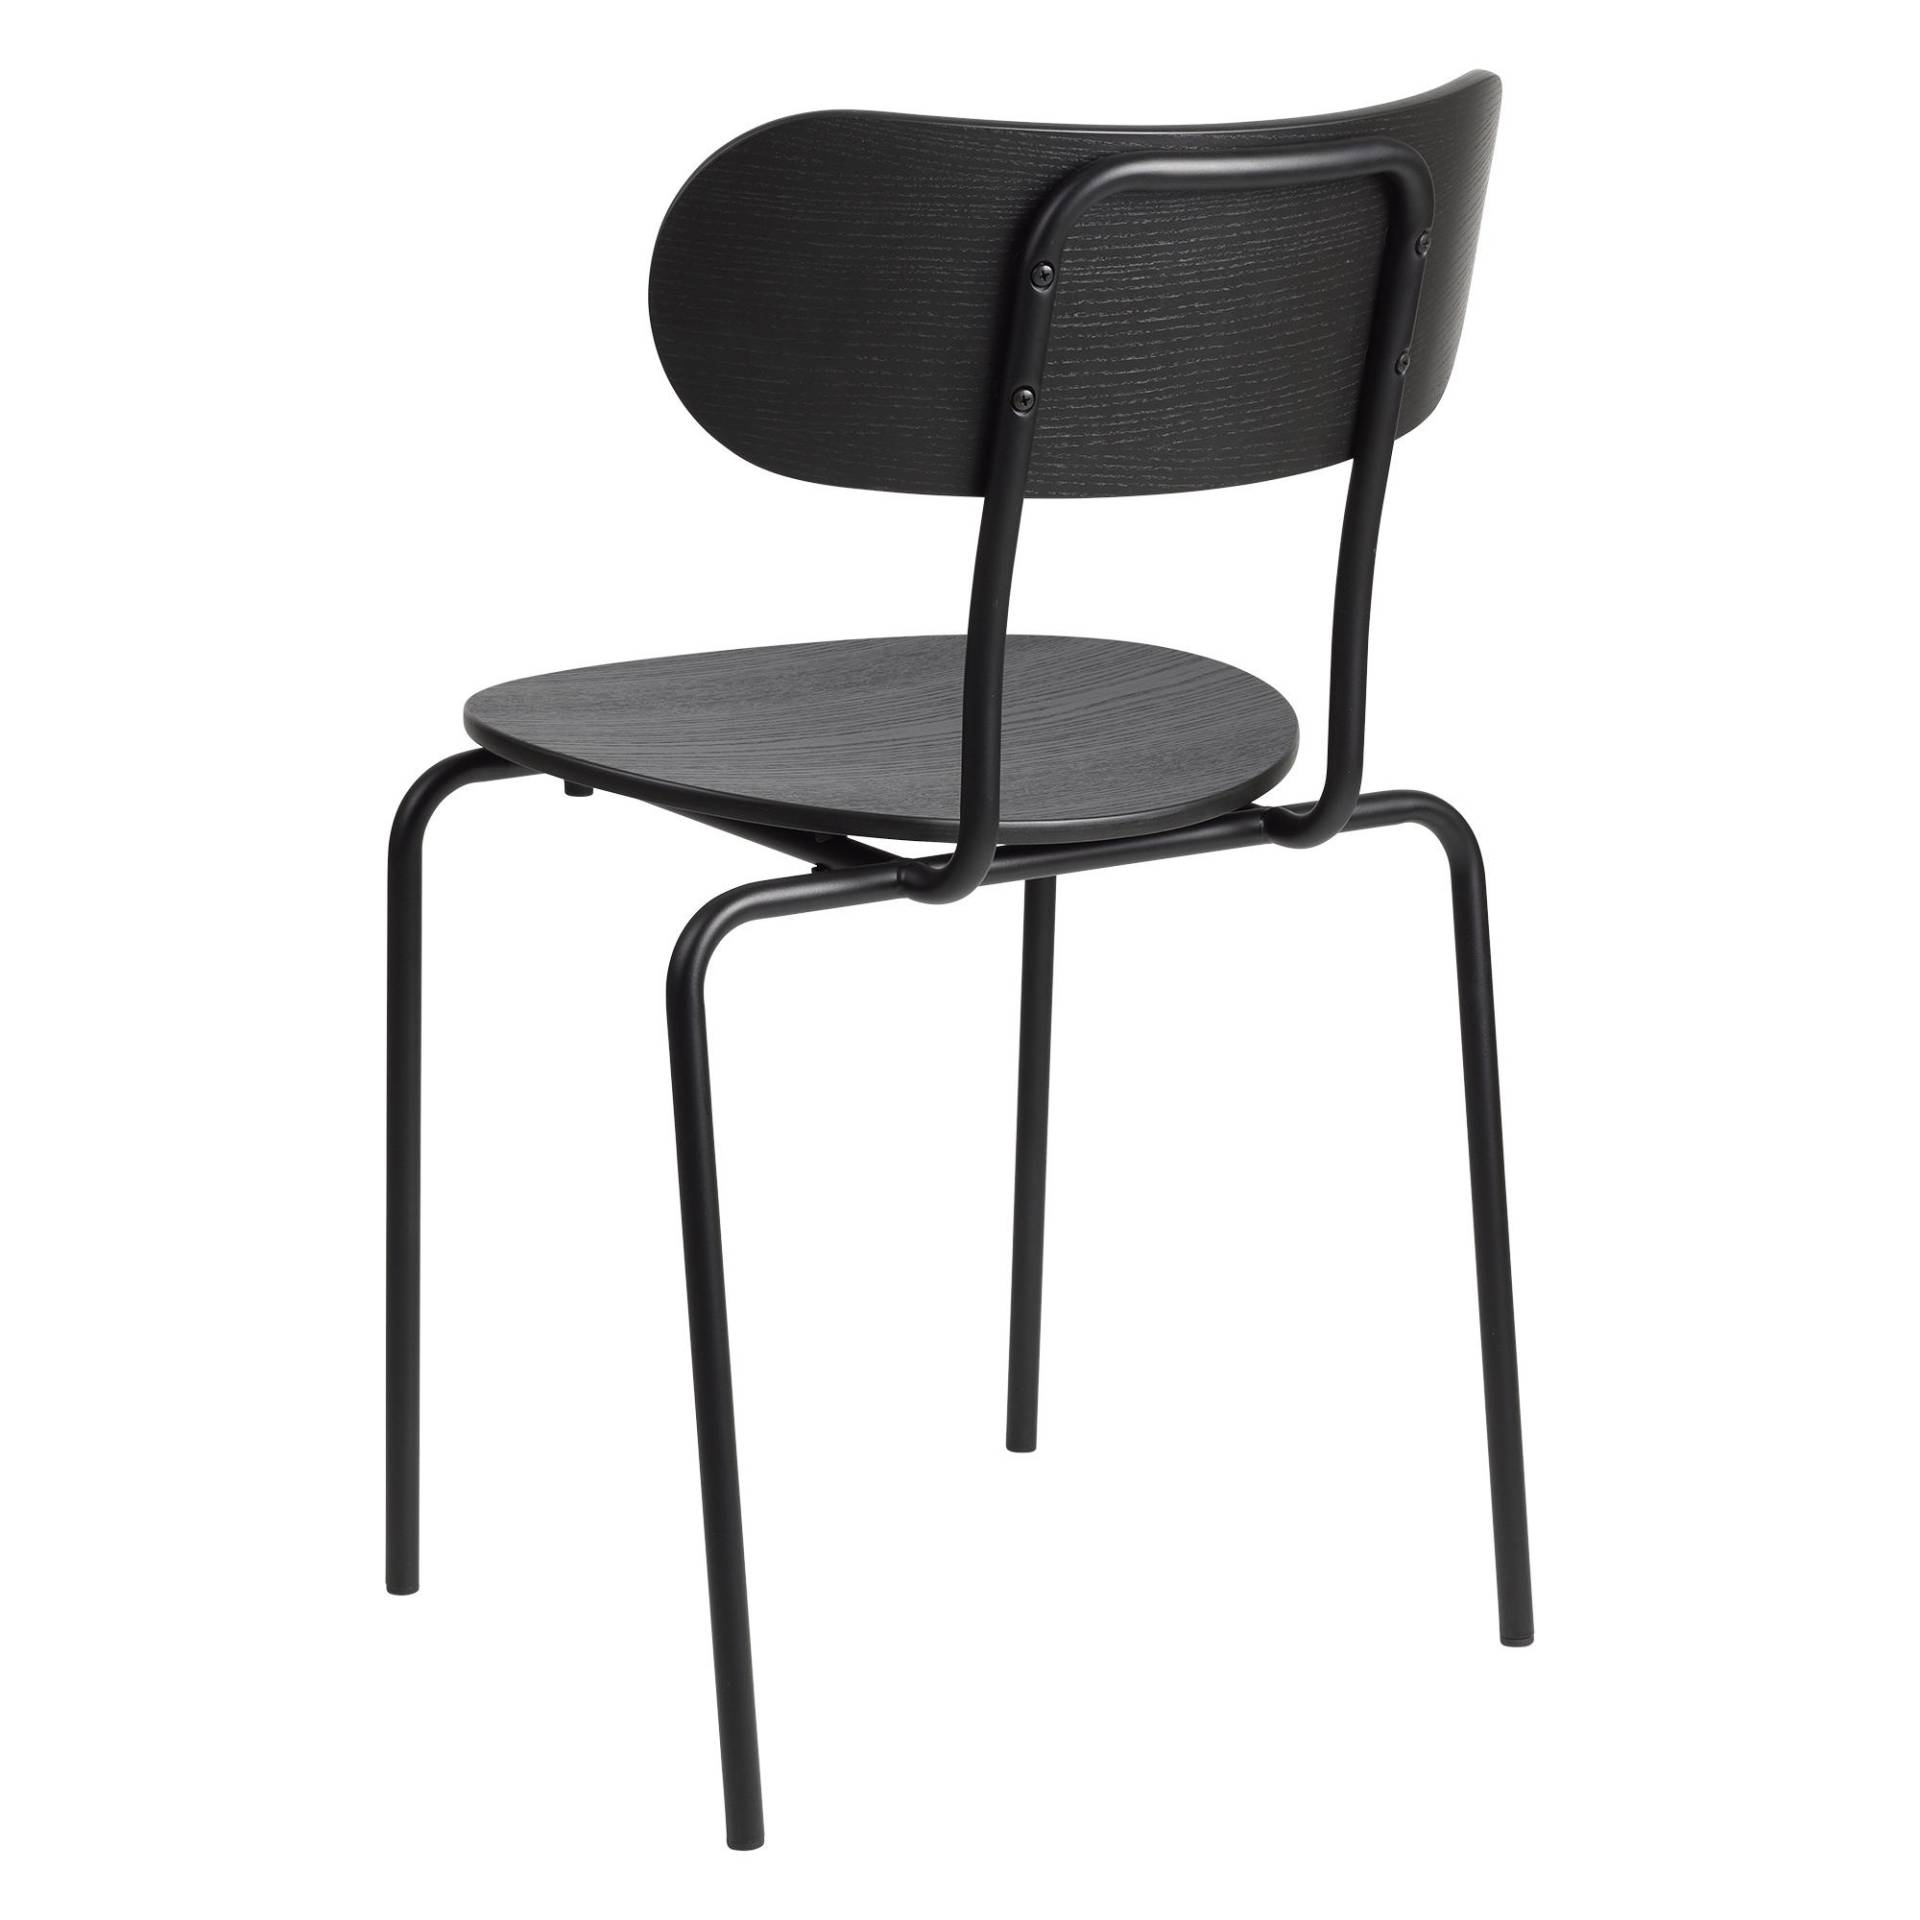 Gubi - Coco Dining Chair stapelbar - Esche schwarz gebeizt/matt lackiert/BxTxH 50x53x81cm/mit Kunststoffgleitern/Gestell Metall schwarz RAL 9005 matt von Gubi